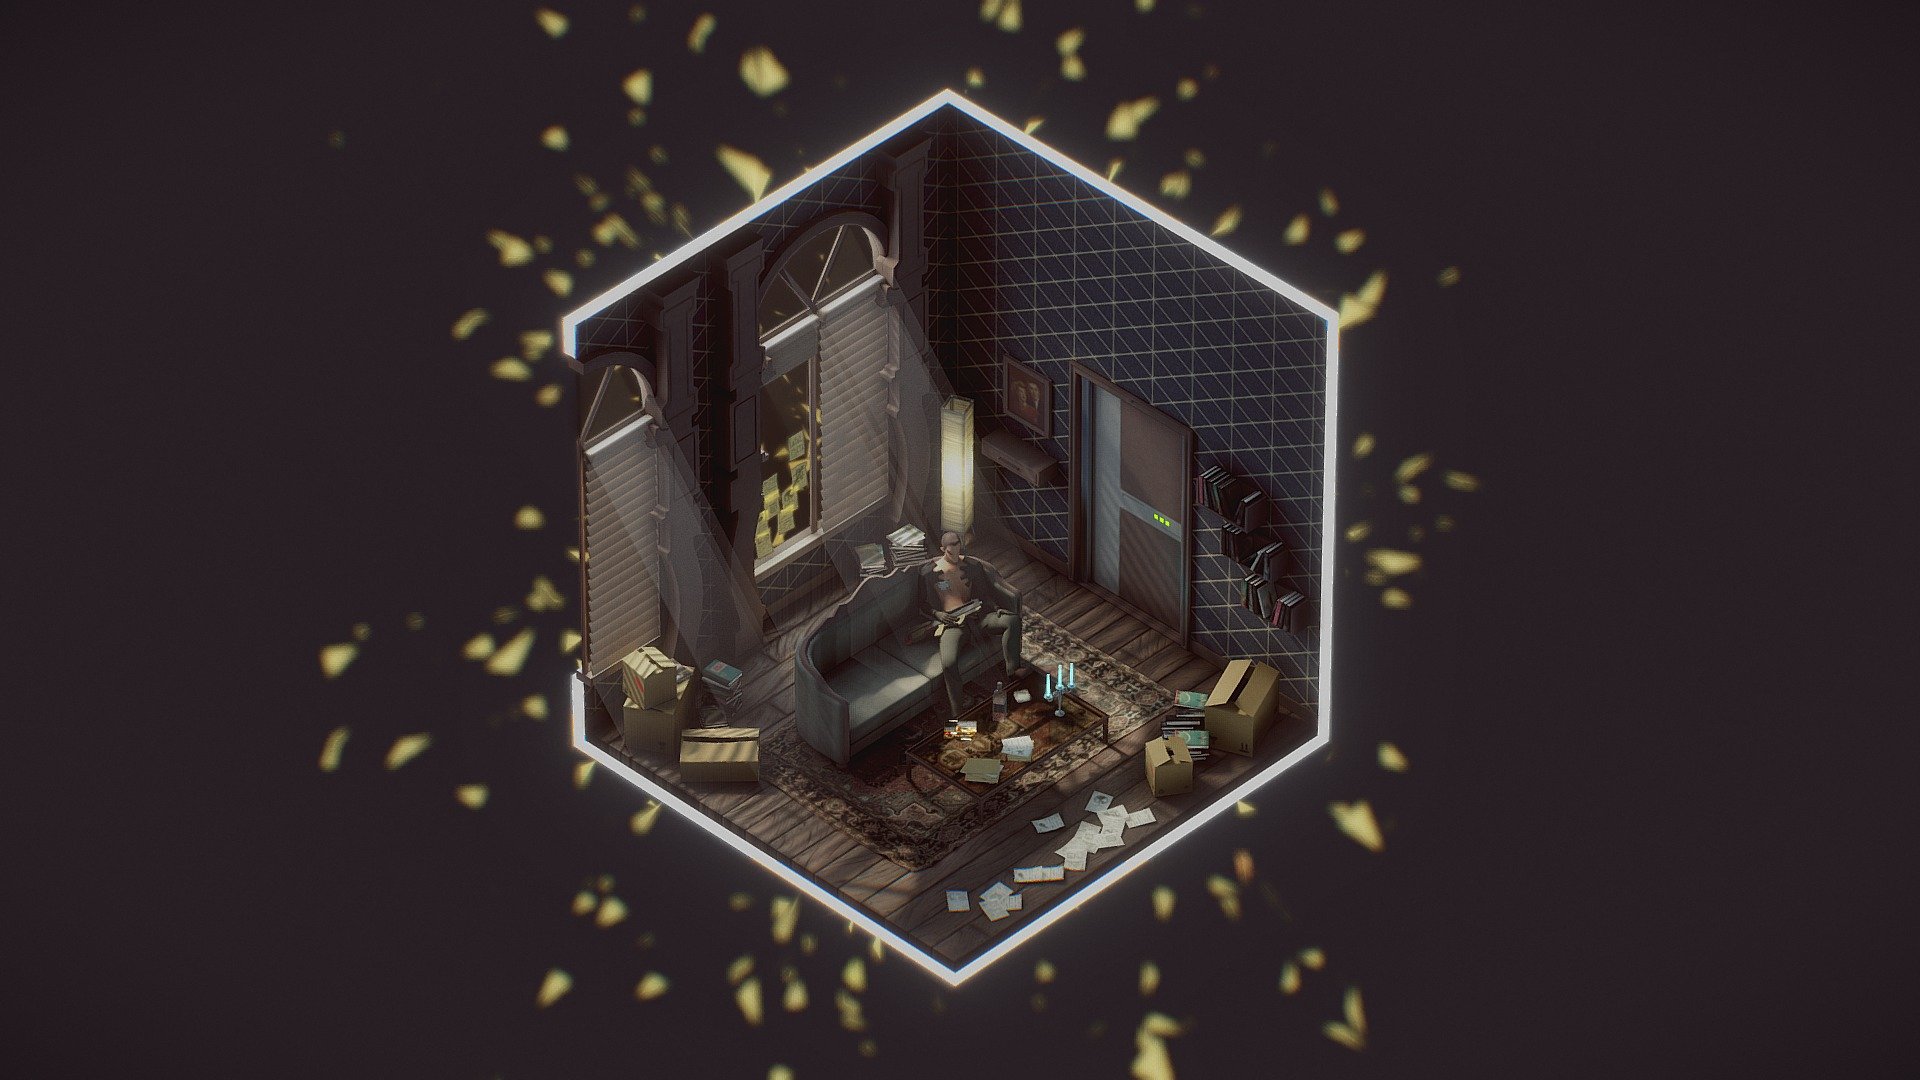 Deus Ex HR - Adam Jensen's apartment